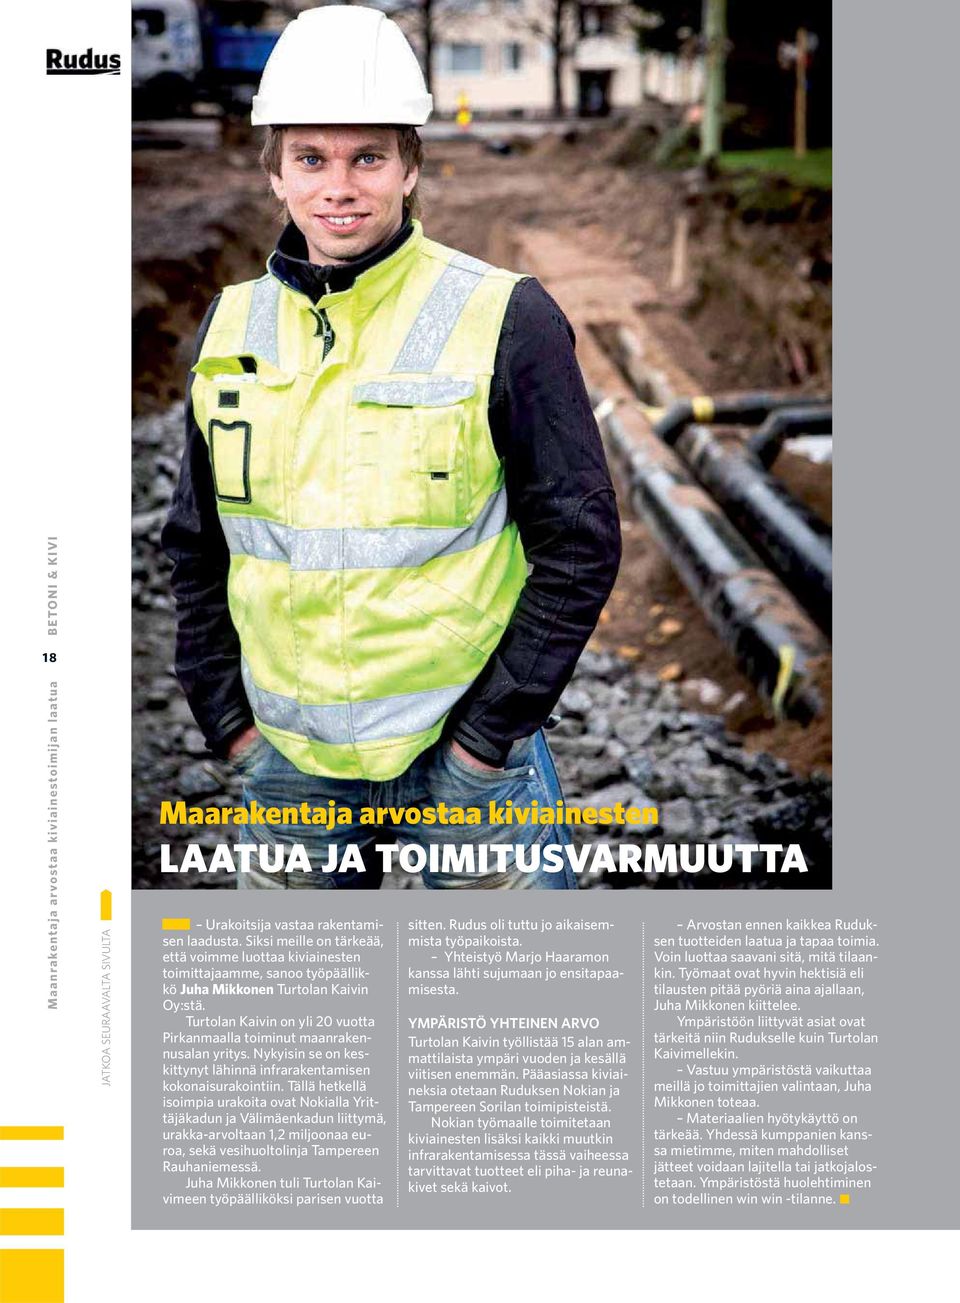 Turtolan Kaivin on yli 20 vuotta Pirkanmaalla toiminut maanrakennusalan yritys. Nykyisin se on keskittynyt lähinnä infrarakentamisen kokonaisurakointiin.